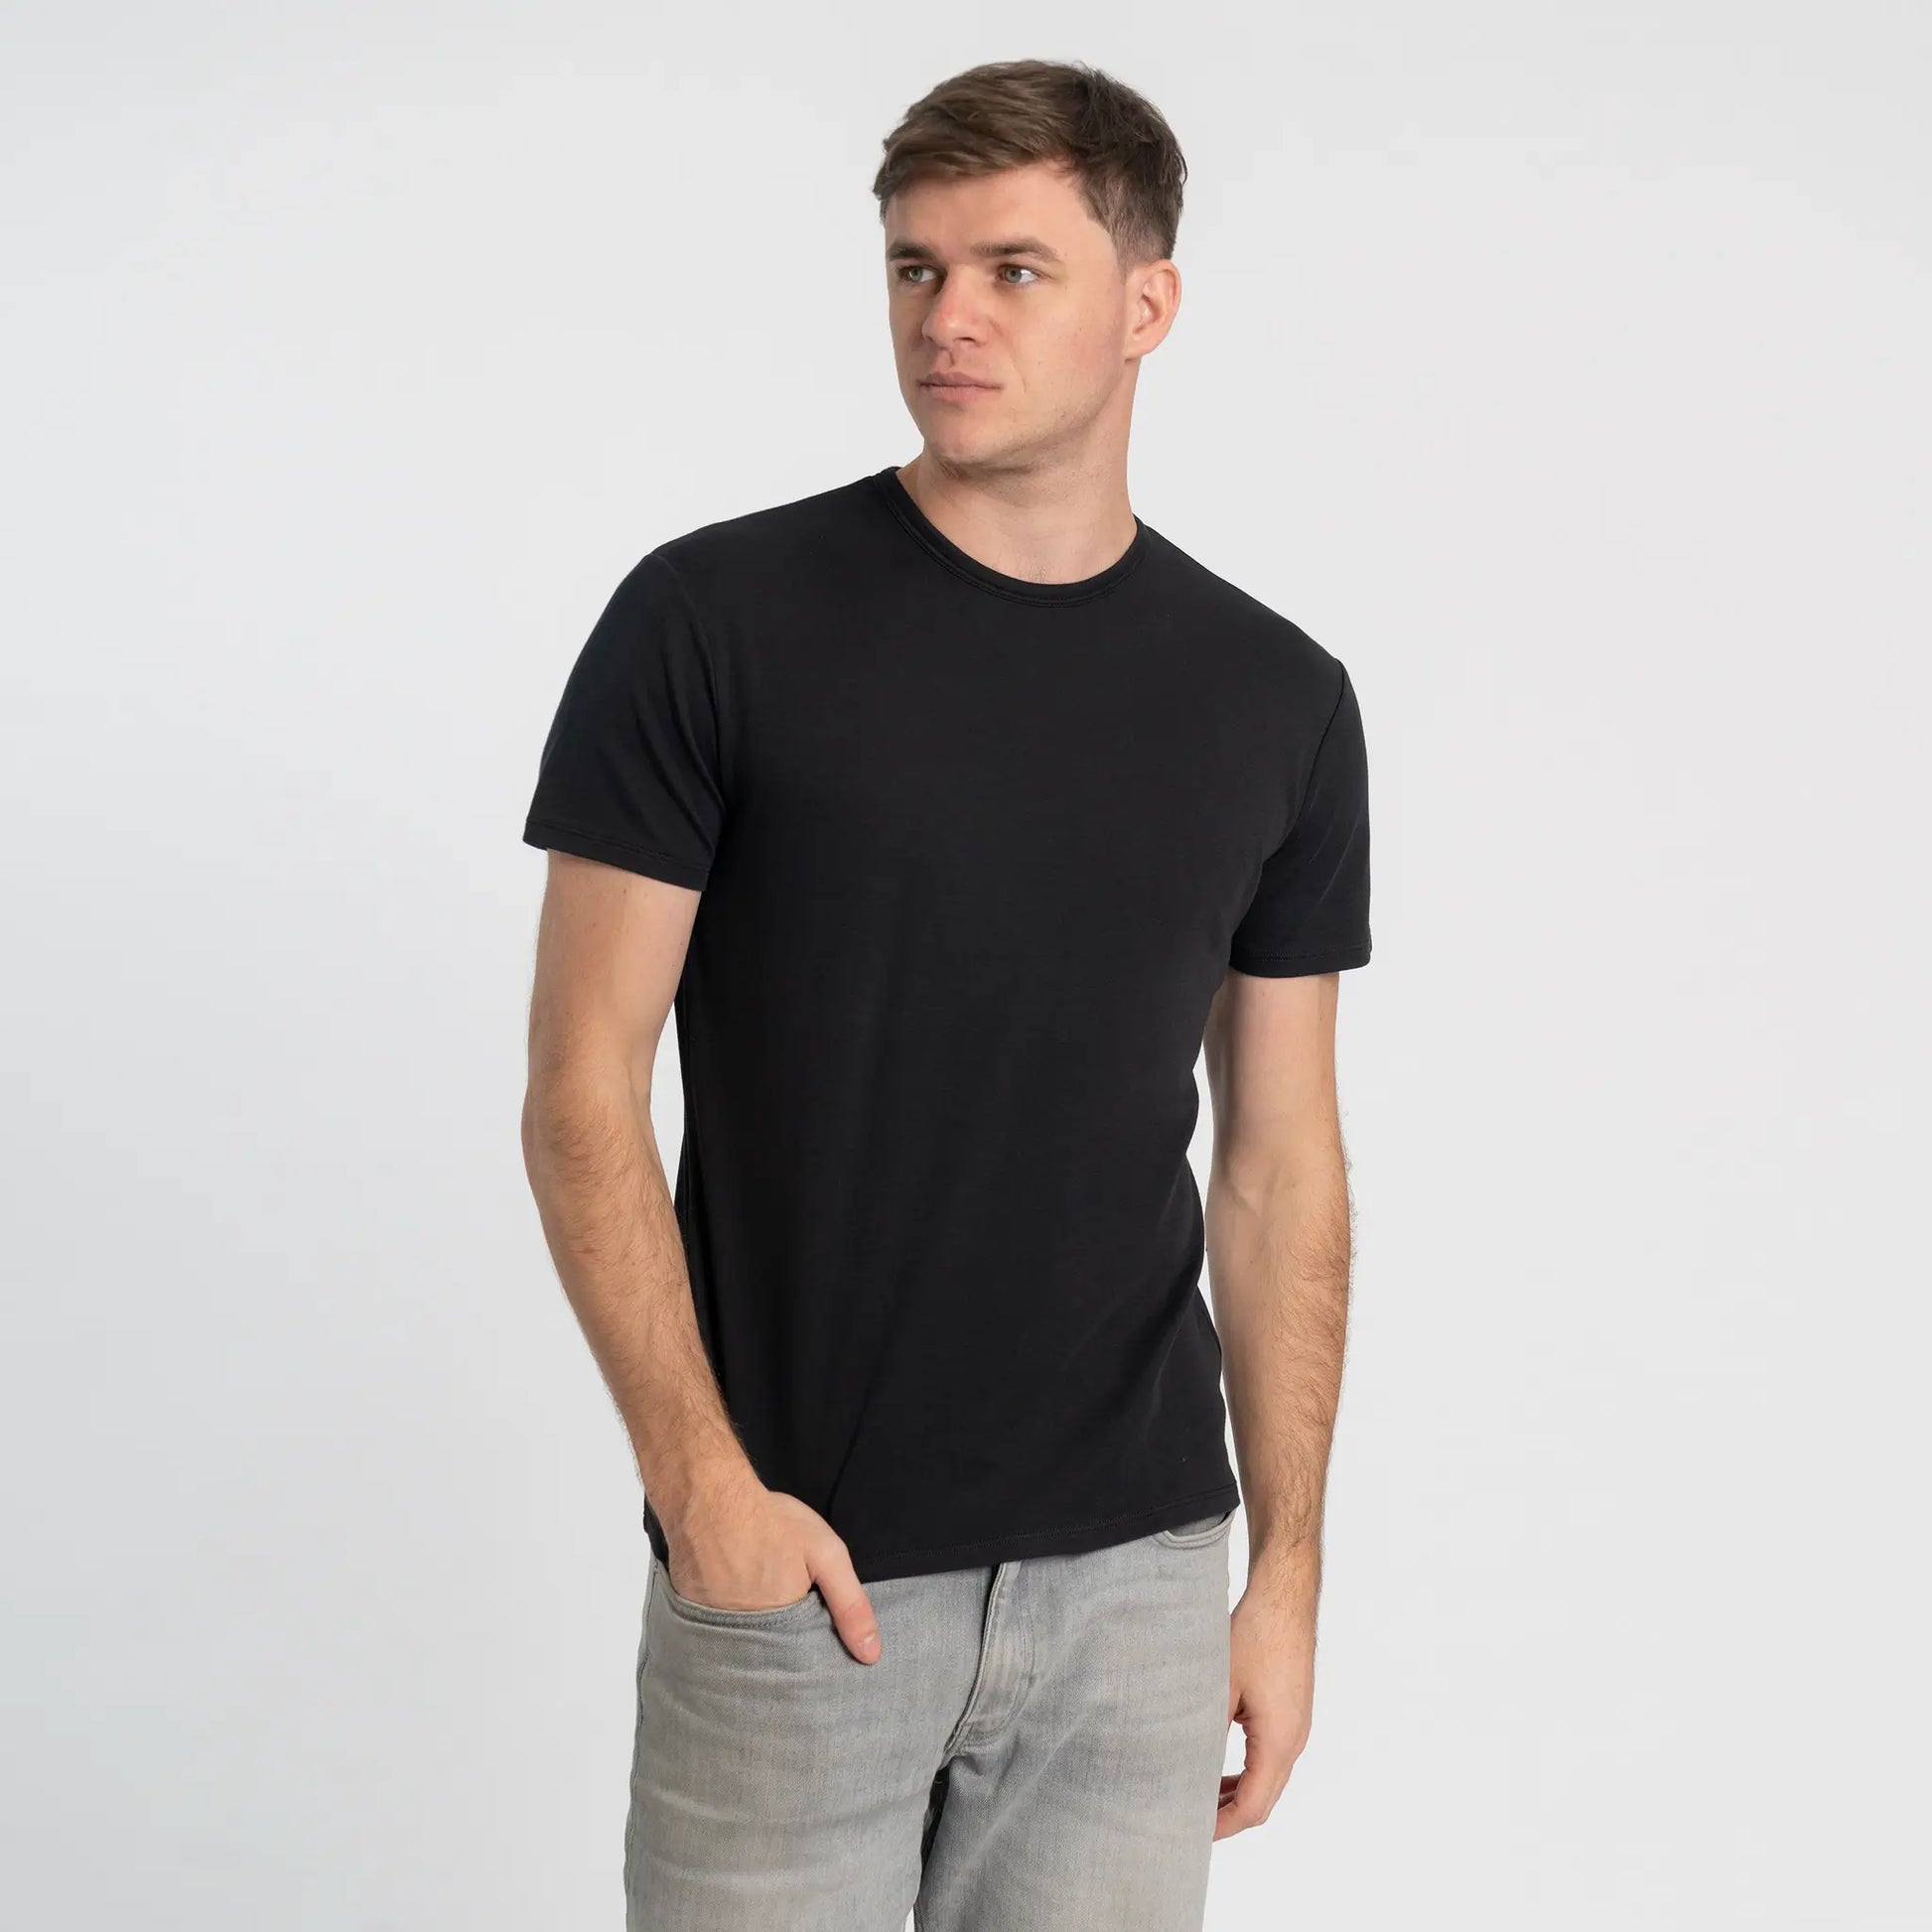 mens indoor tshirt crew neck color black